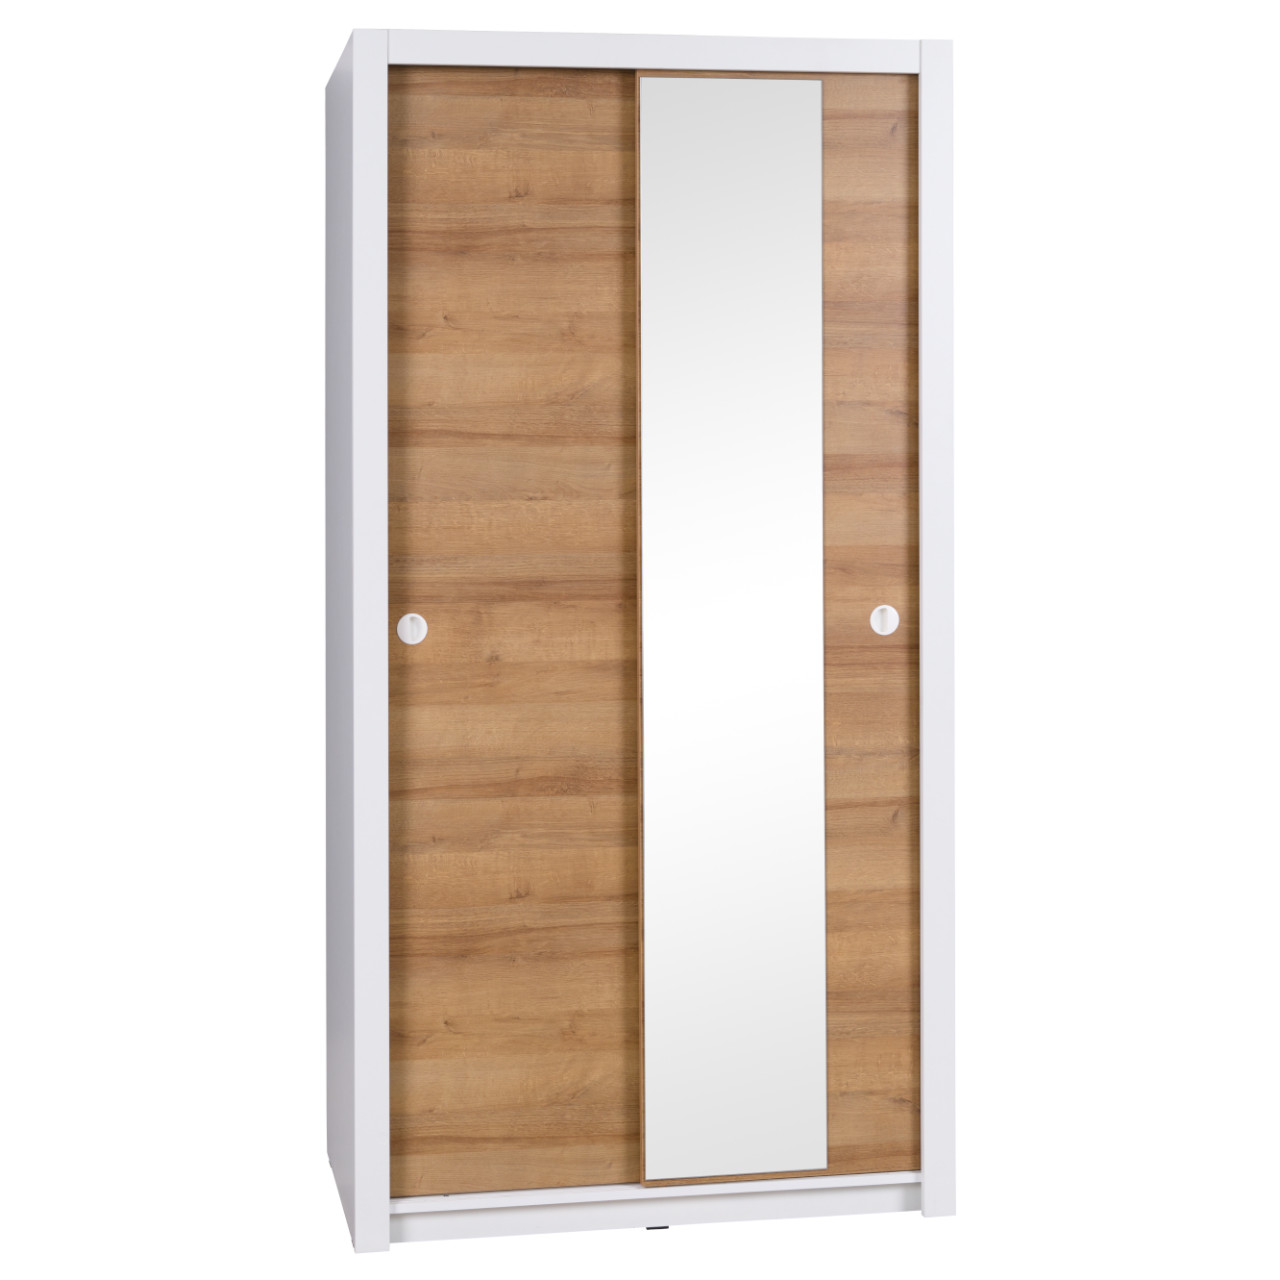 Wardrobe with Sliding Doors IWA IW13 white / golden oak